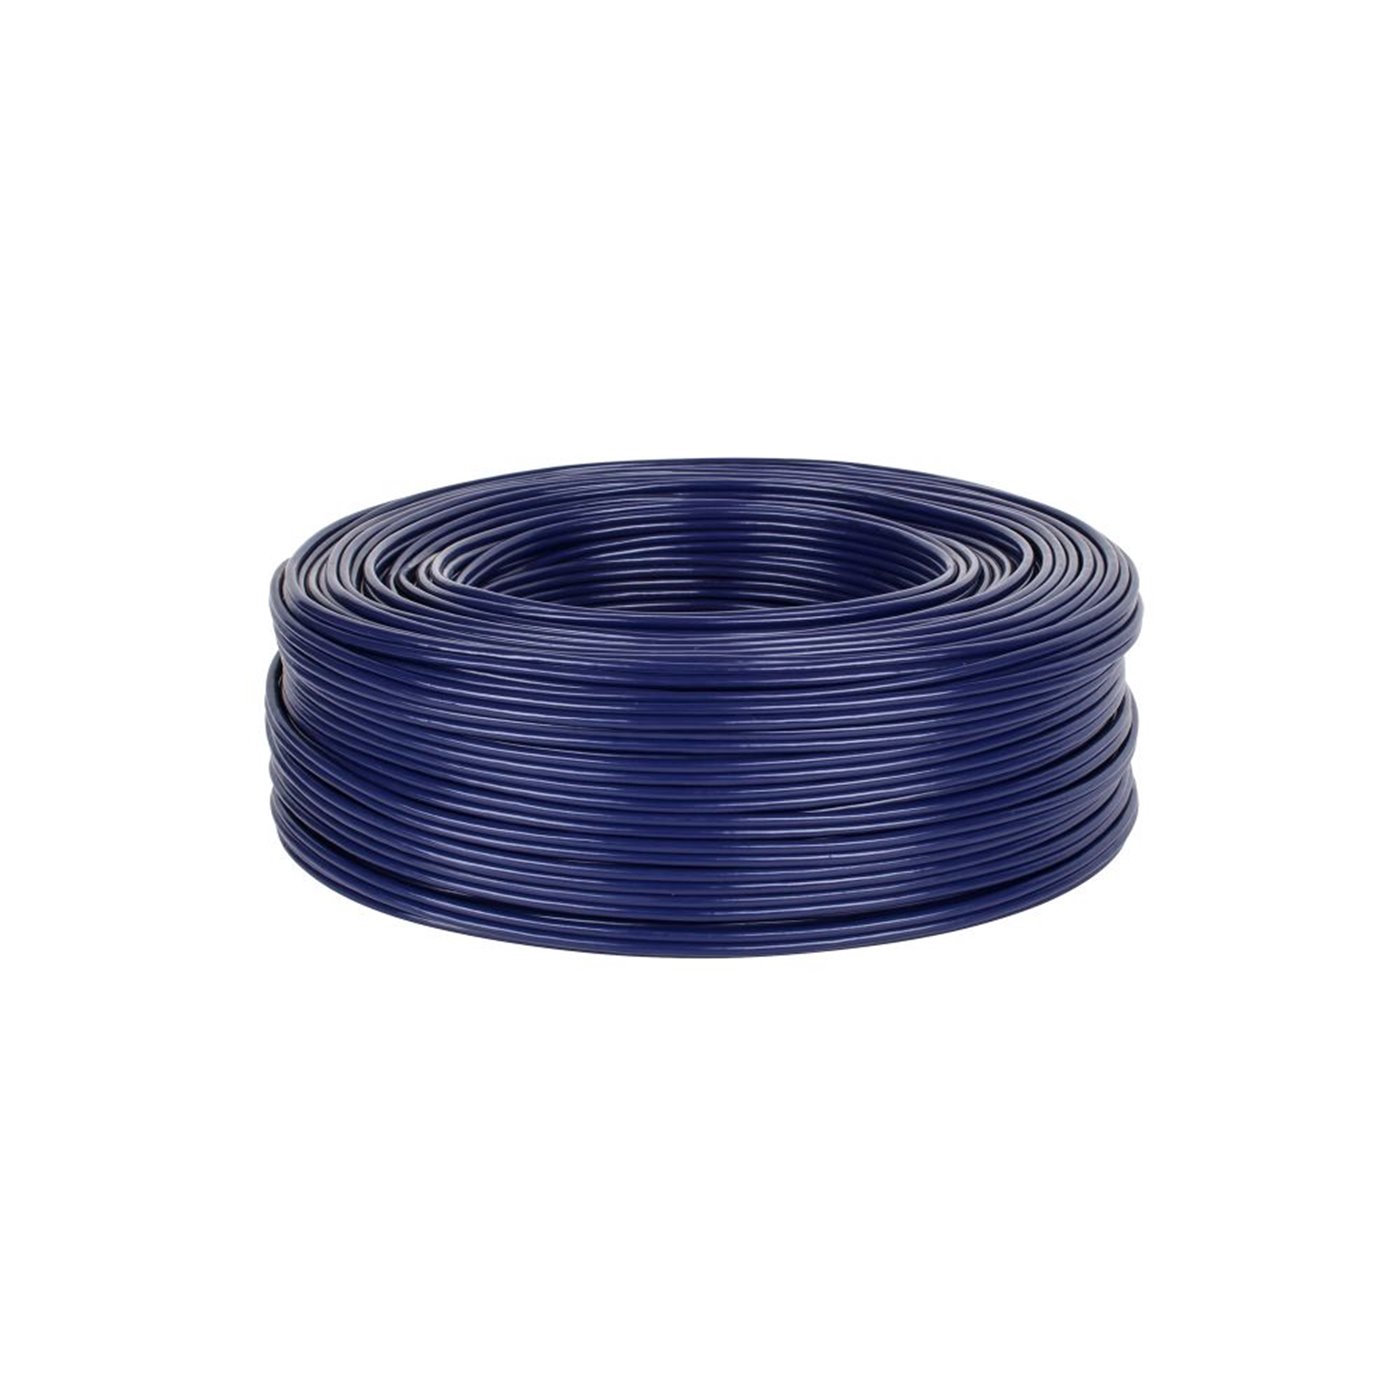 Kábel tienený 2x4mm-modrý (100m)